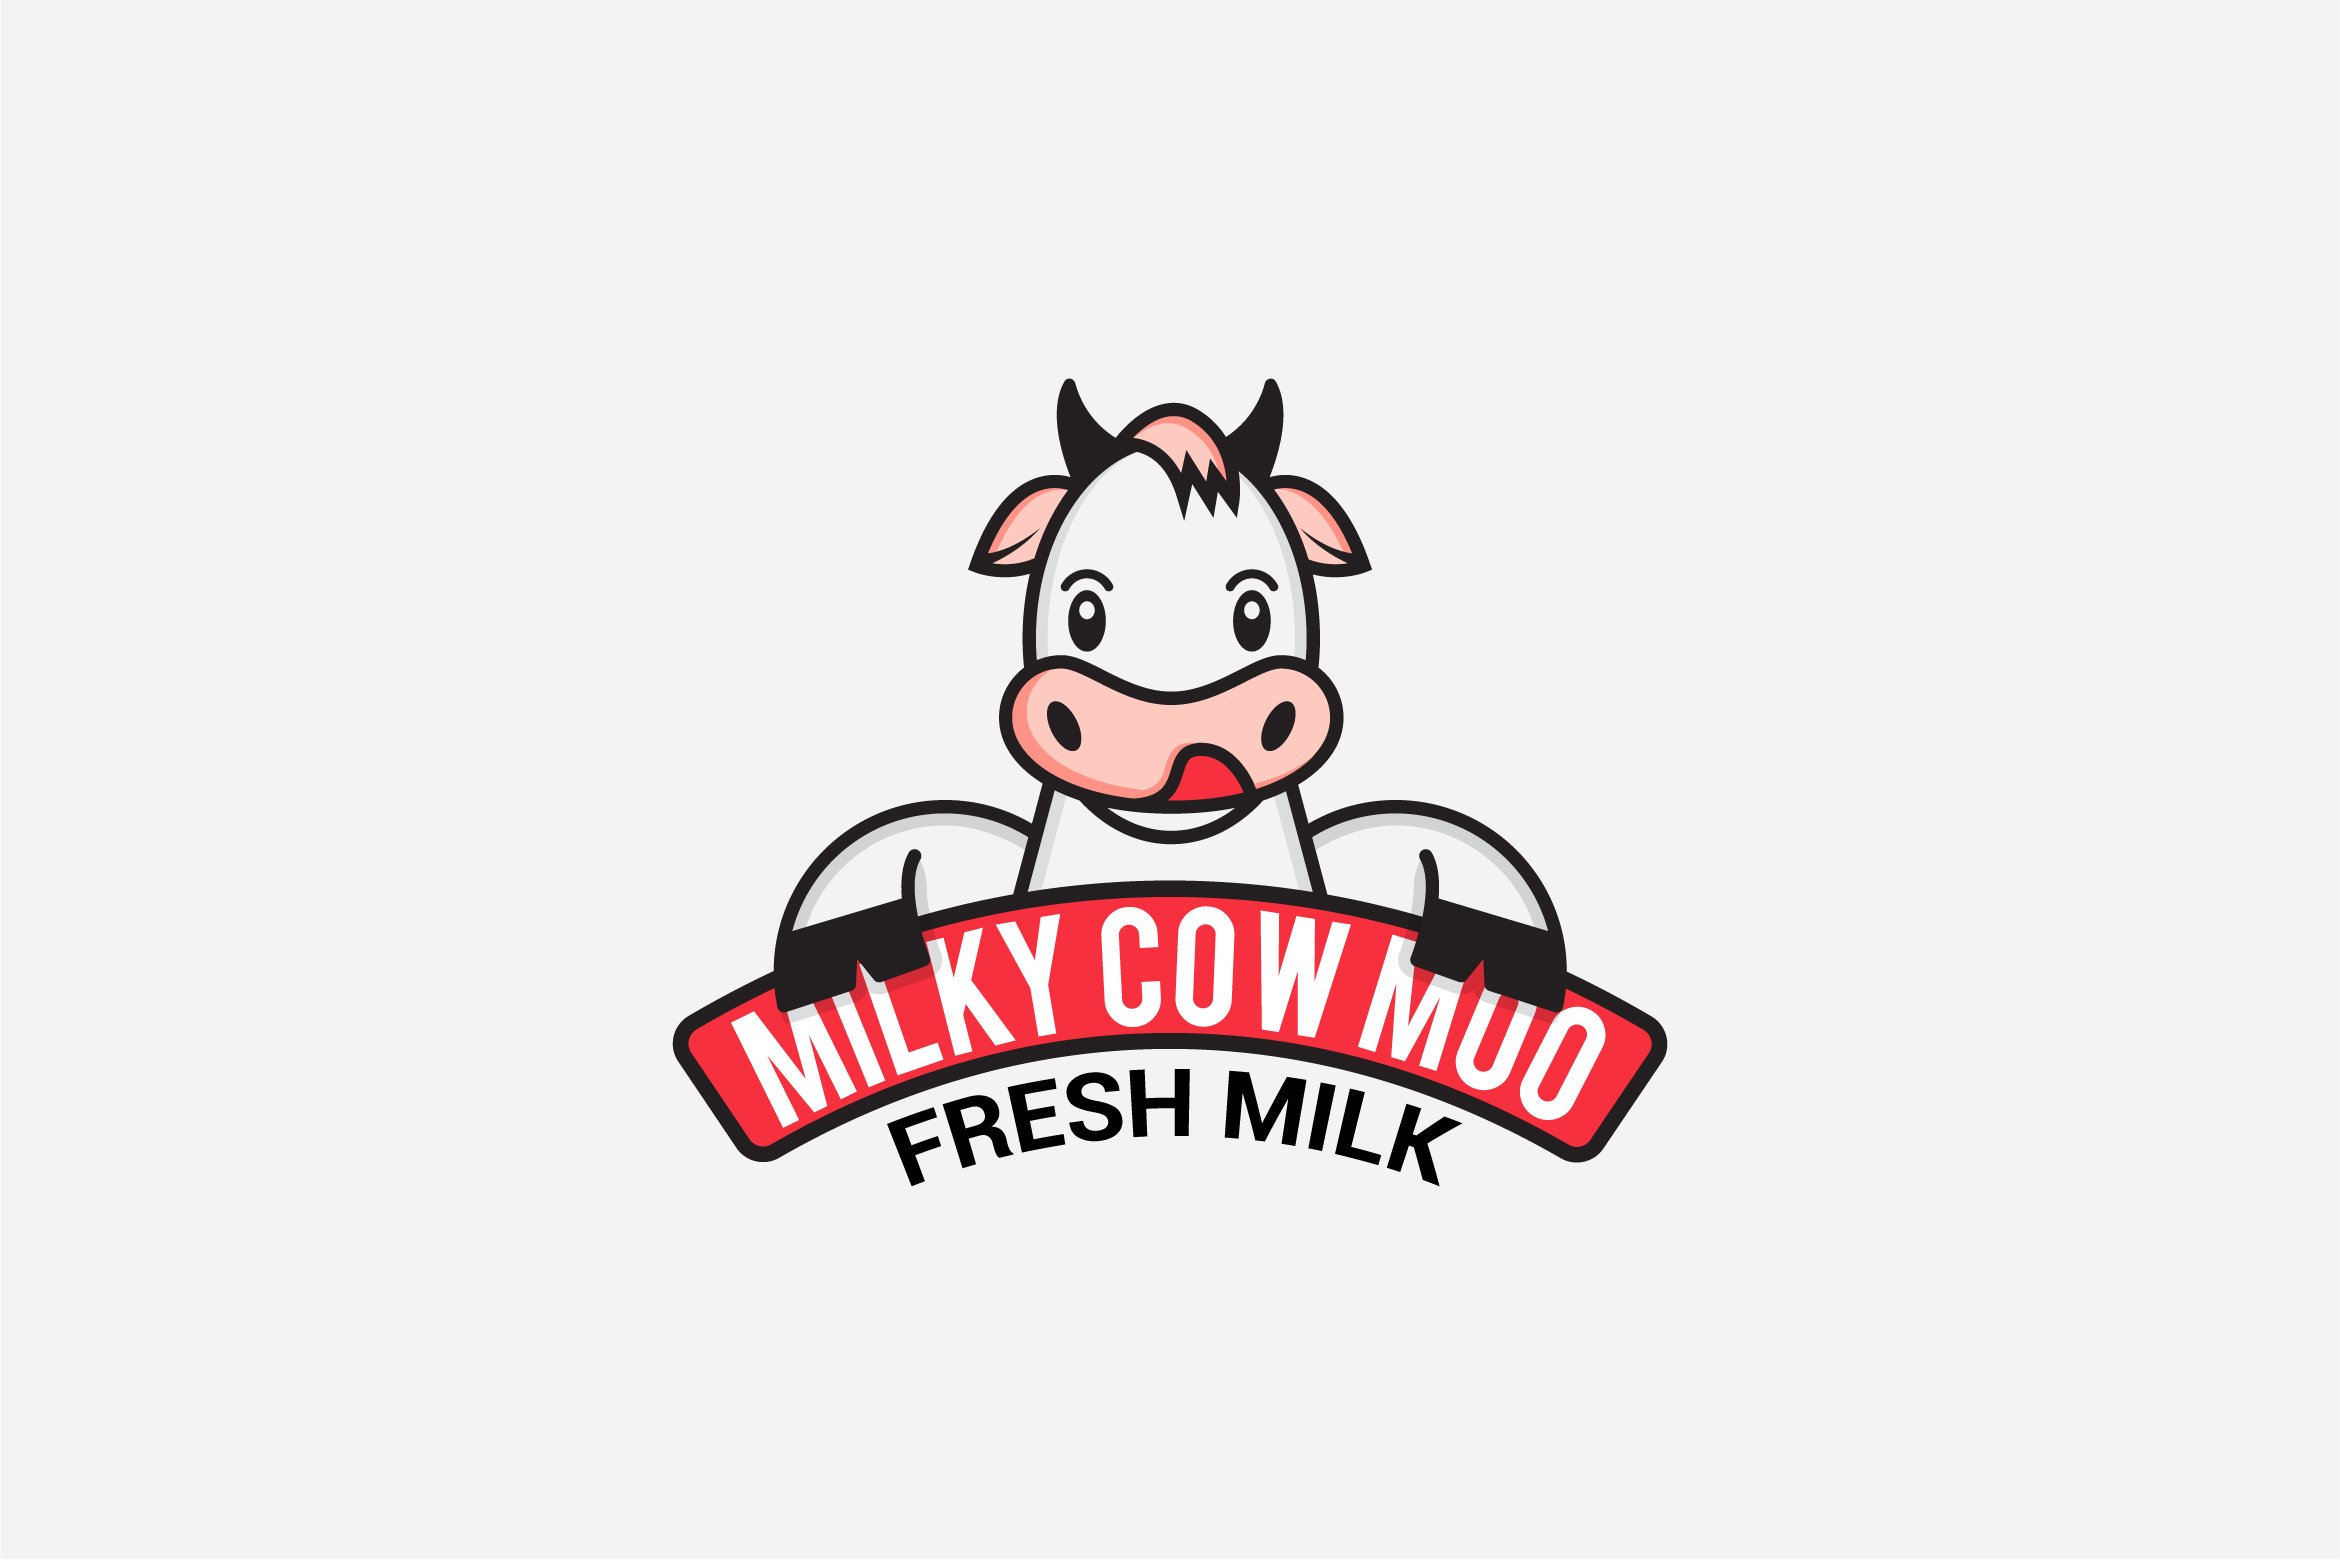 So cute bright cow logo.